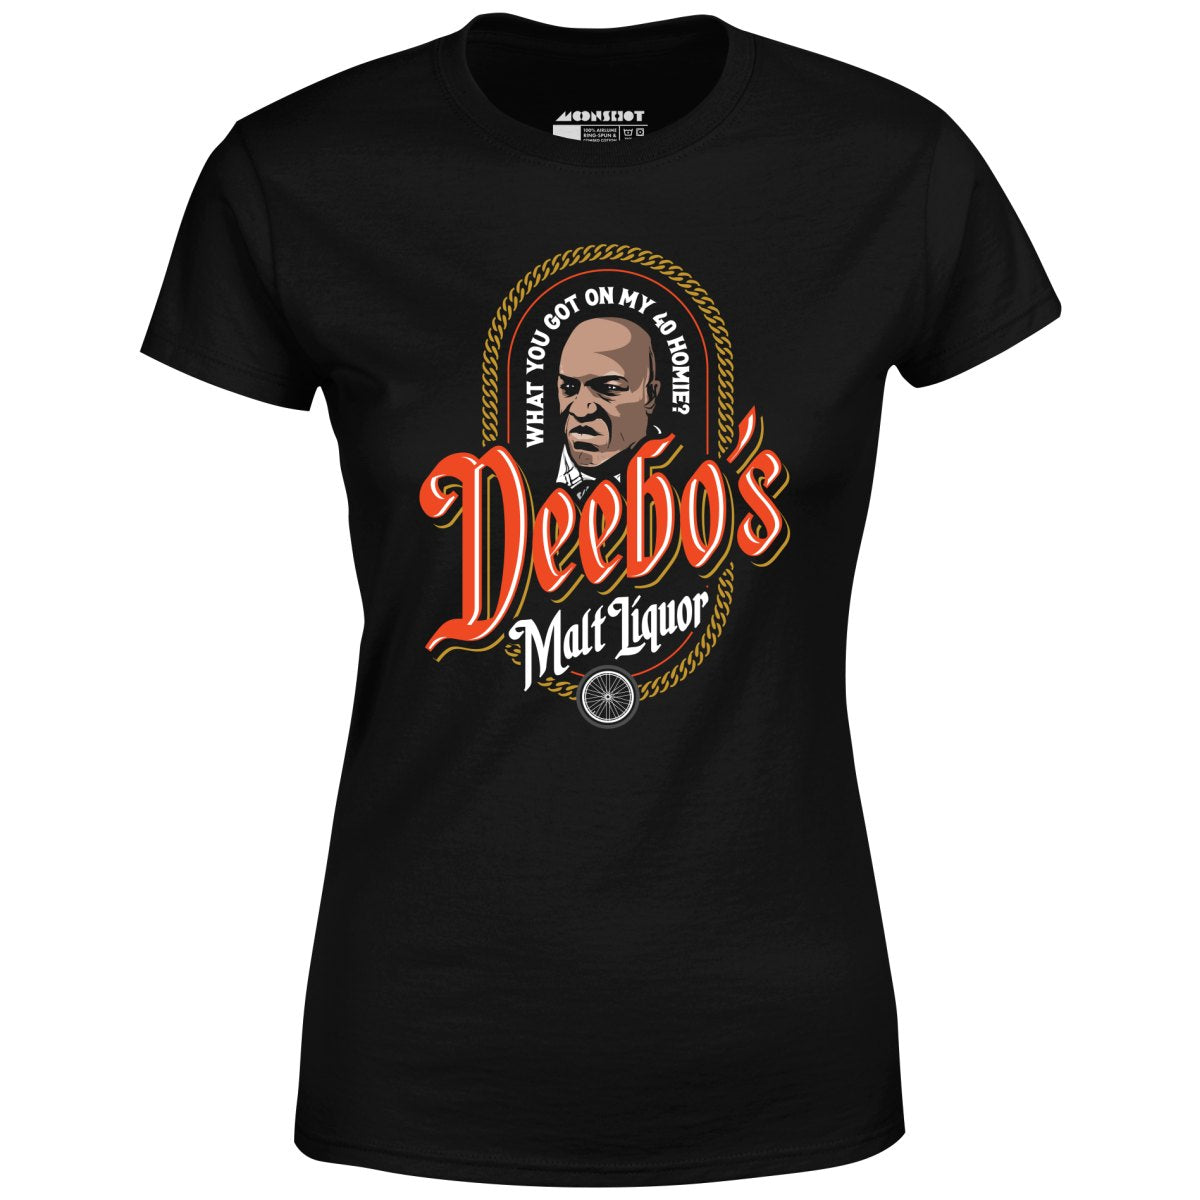 Deebo's Malt Liquor - Women's T-Shirt